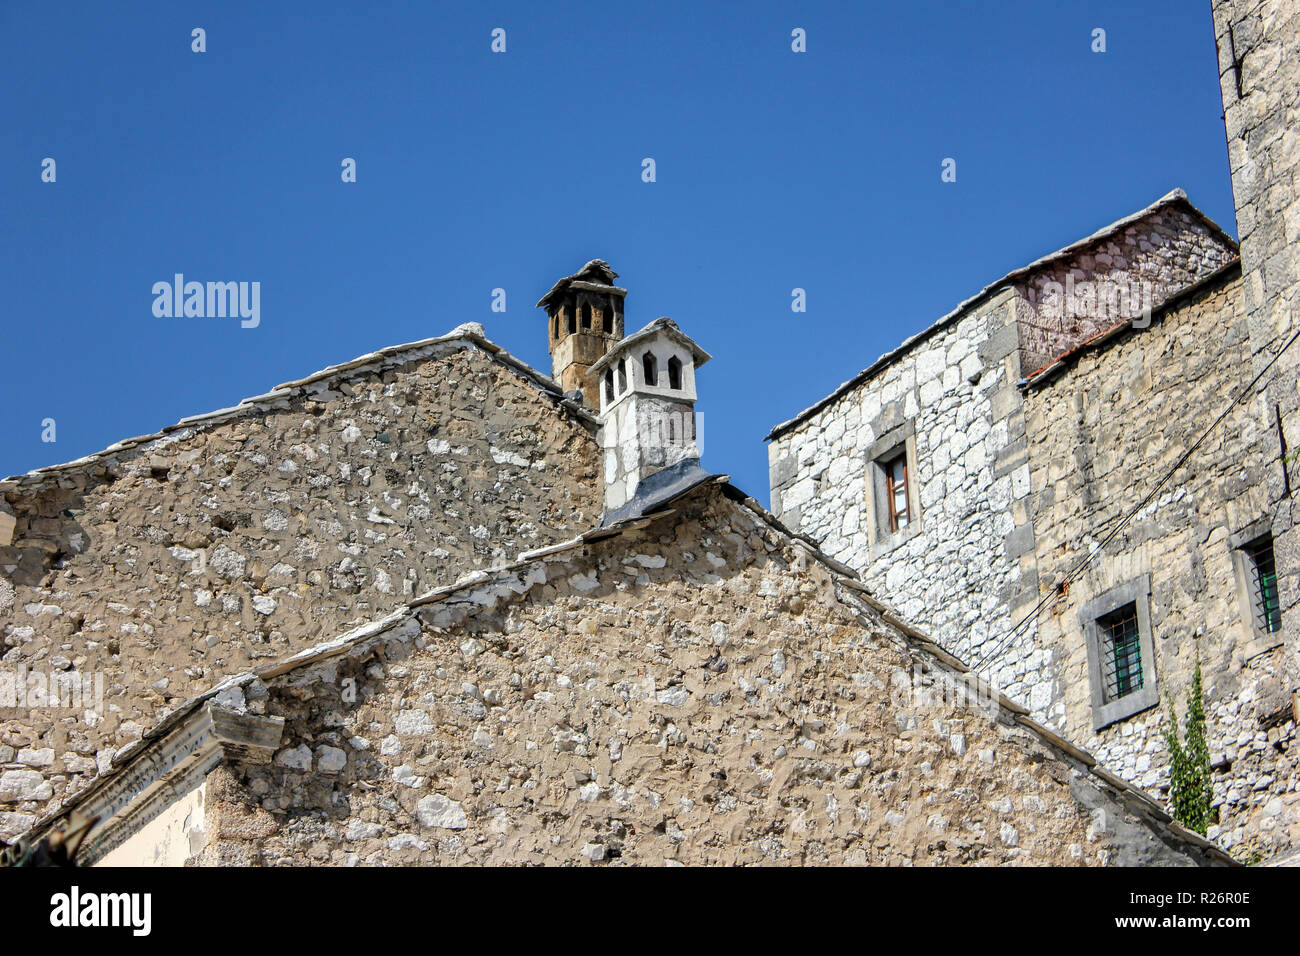 Août 2013, Mostar. Pignon en pierre typique et chimeny pots dans la vieille ville historique. Banque D'Images